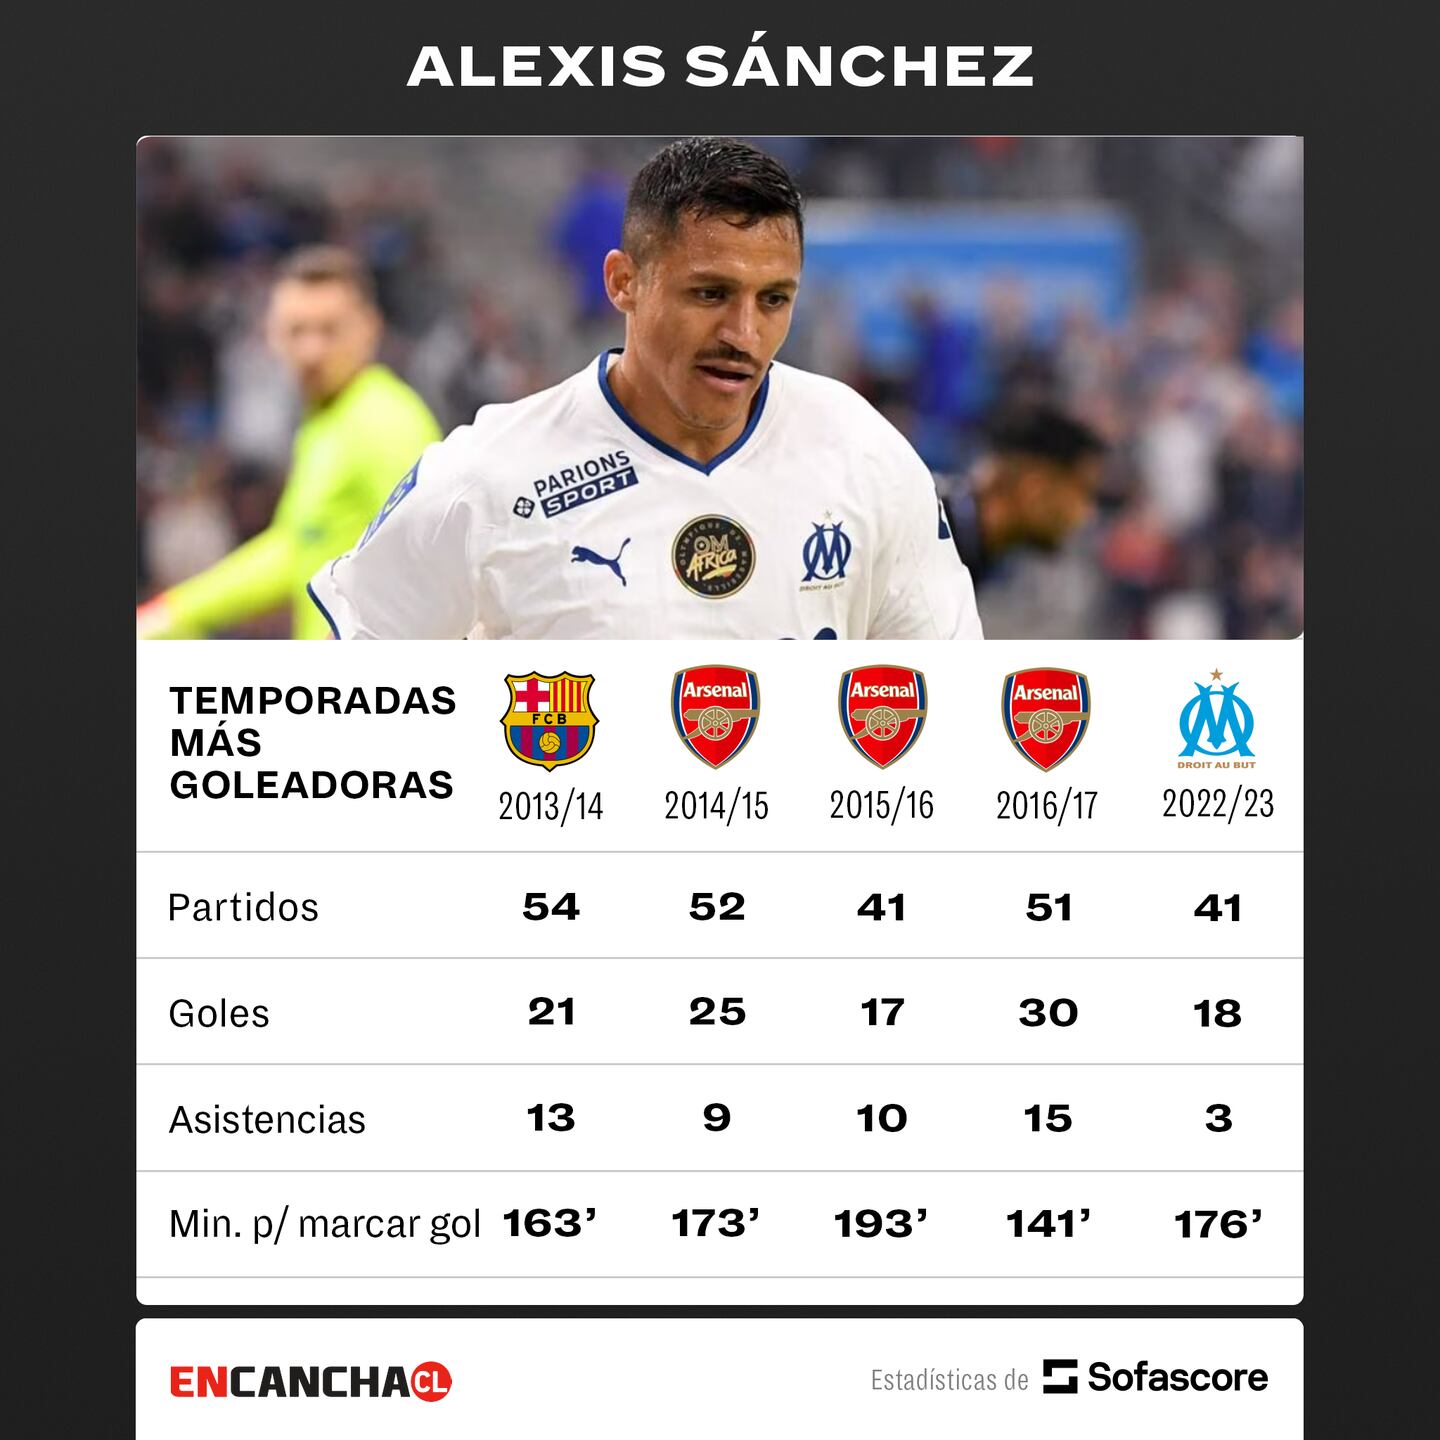 Los datos de los mejores registros de Alexis Sánchez en Europa.